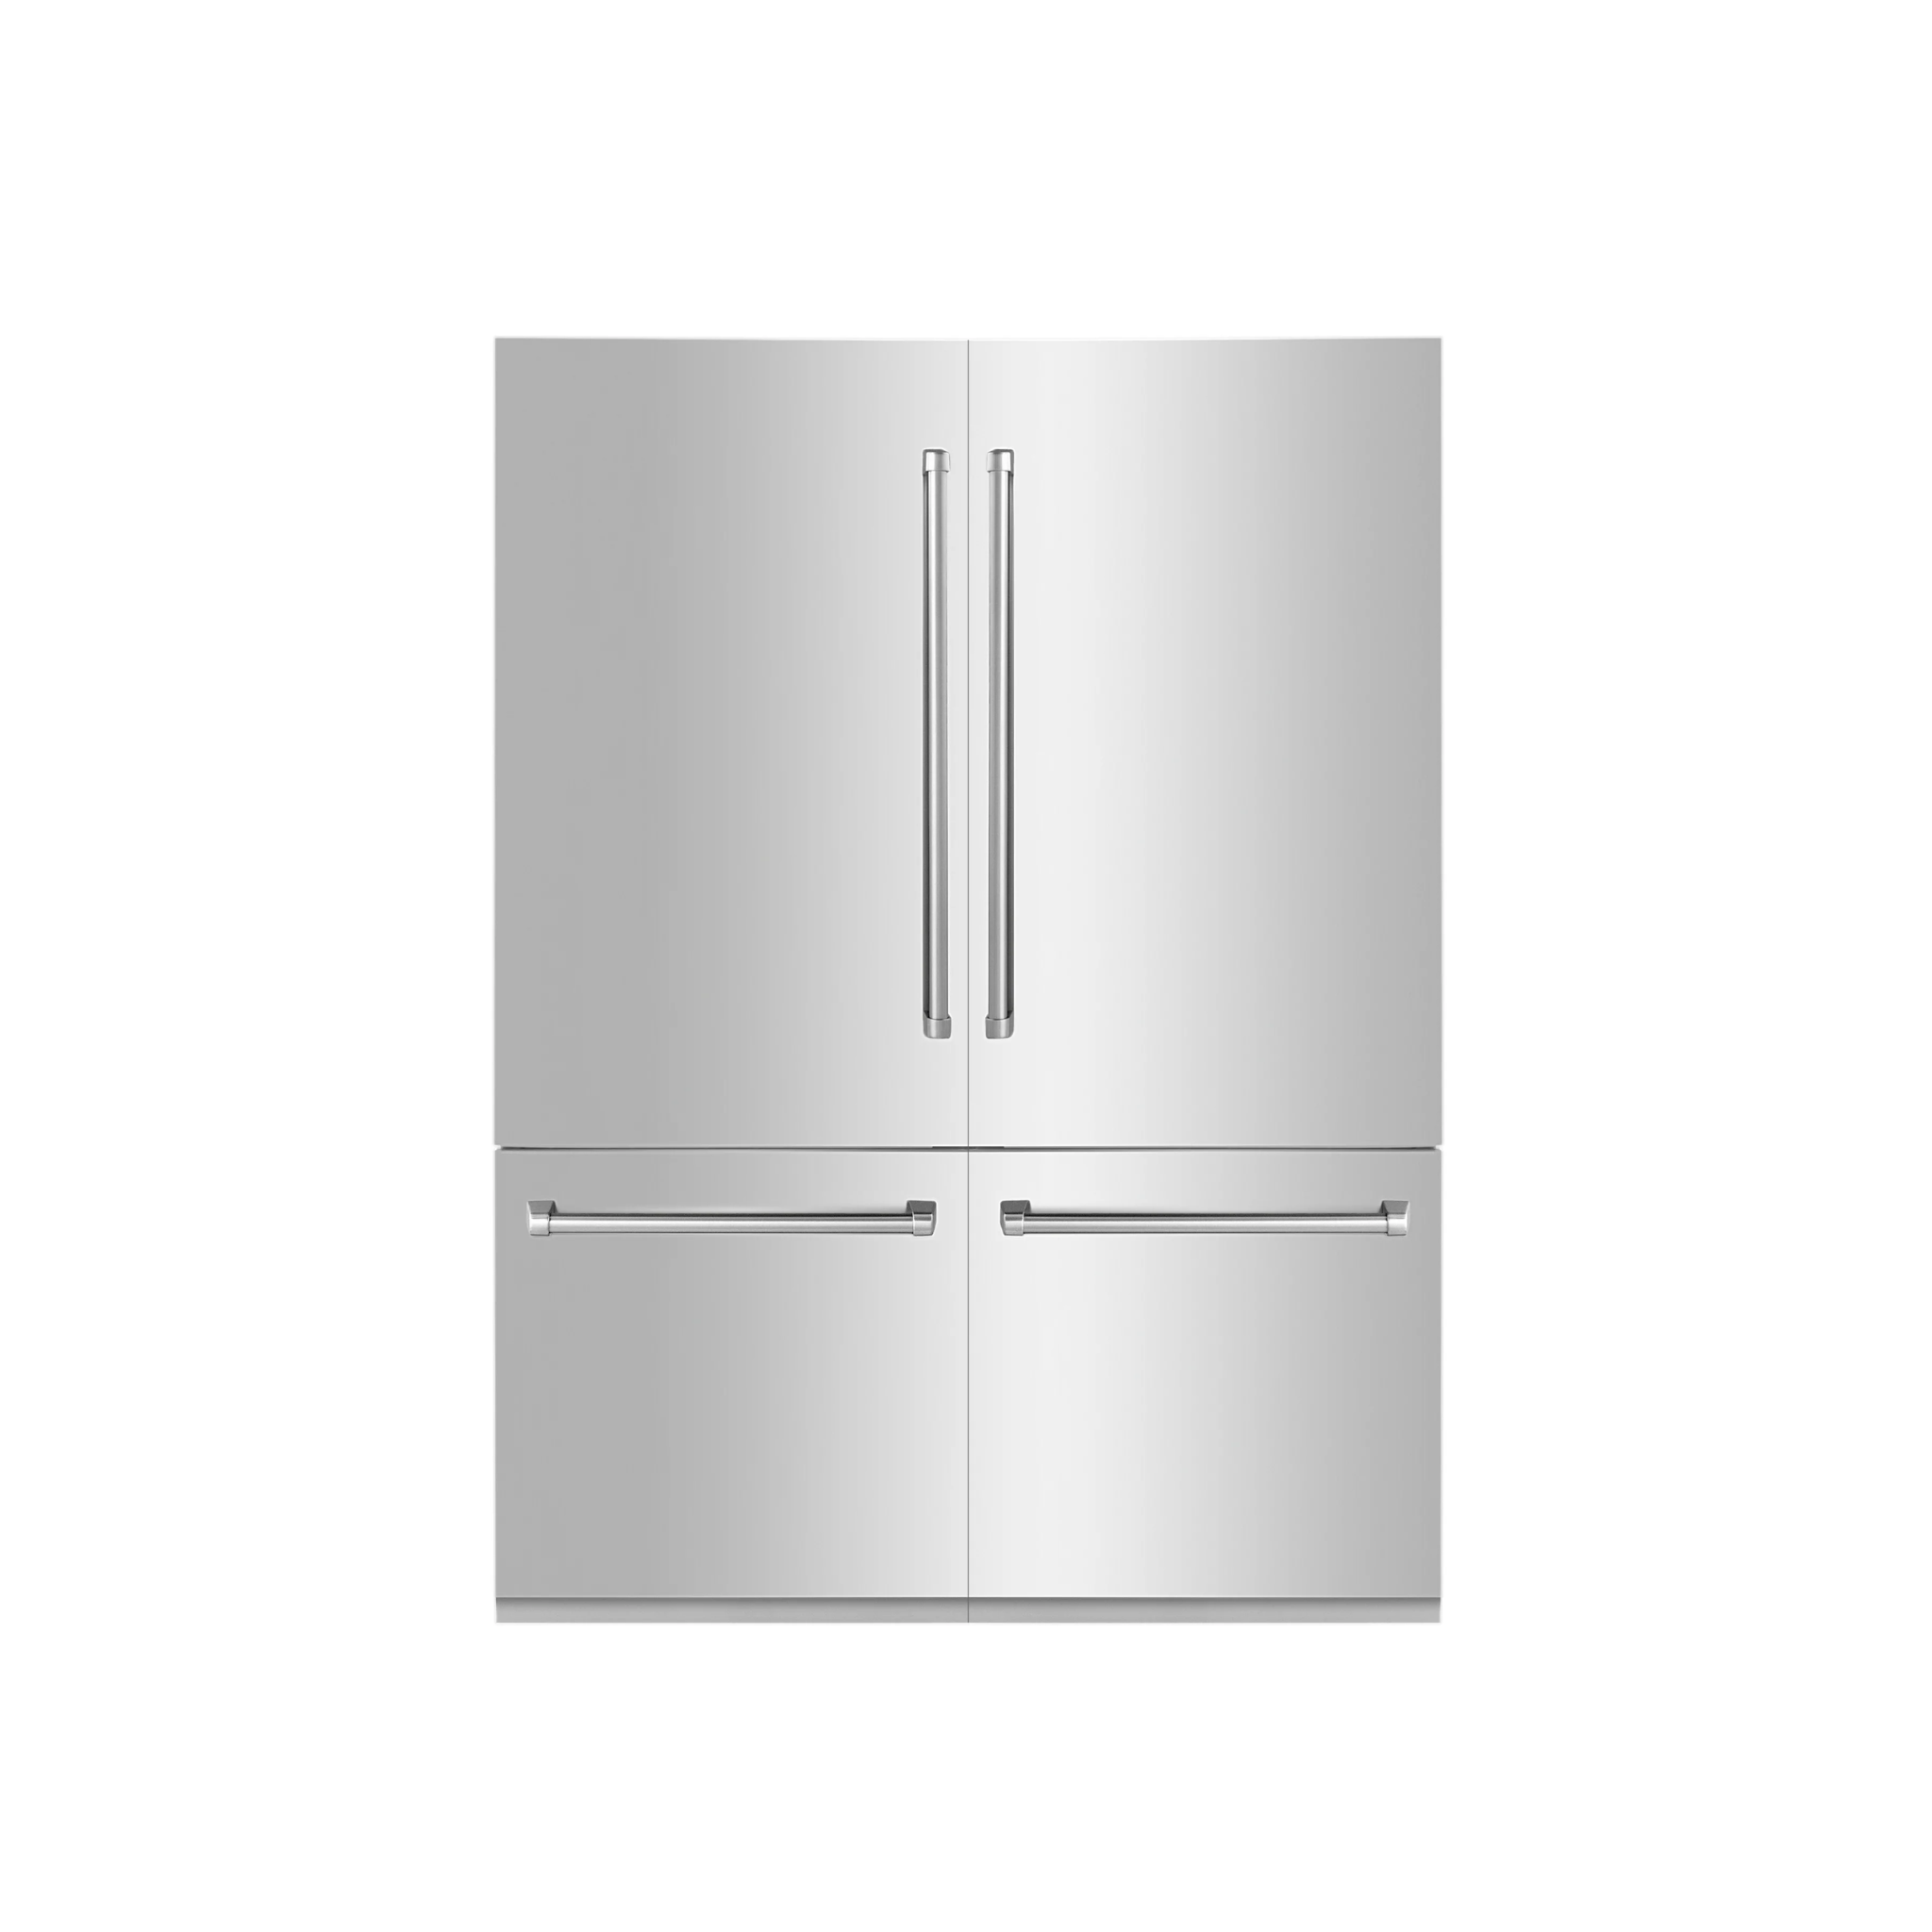 ZLINE 60 32.2 Cu. ft. Built-In 4-Door French Door Refrigerator with Internal Water and Ice Dispenser in Stainless Steel